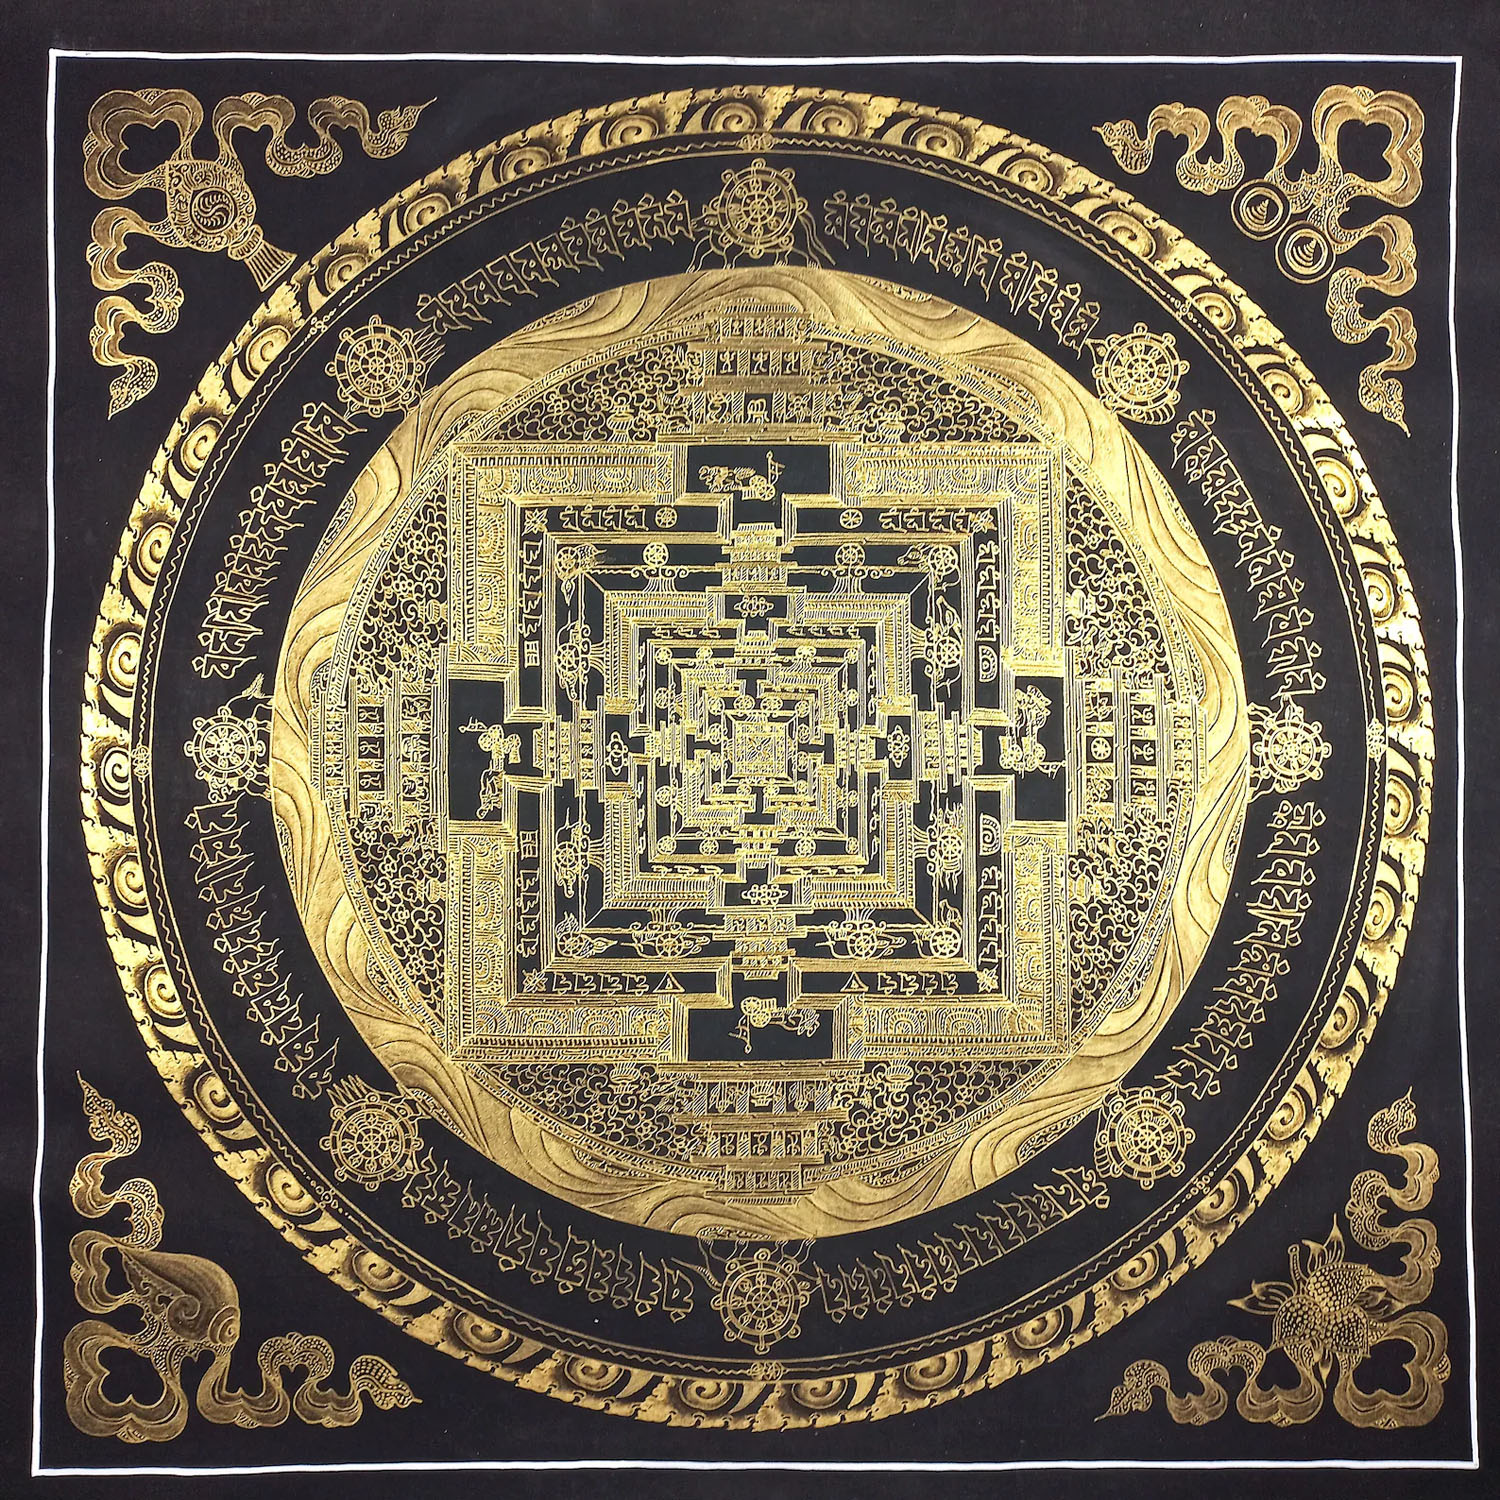 Original Kalachakra Dalai Lama Kalachakra Mandala Tibetan Thangka Painting